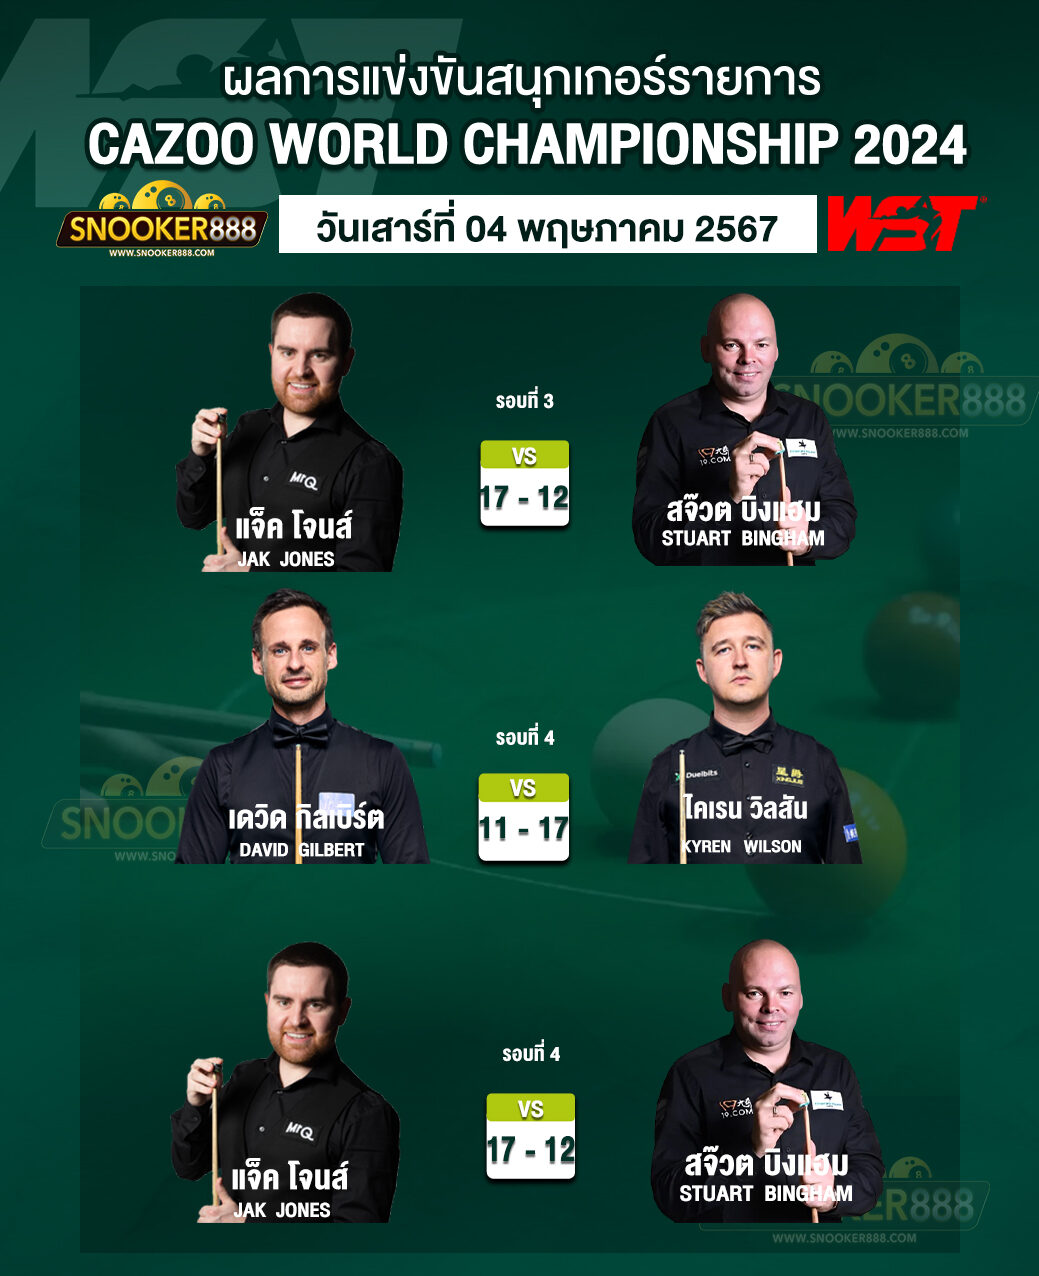 ผลการแข่งขันสนุกเกอร์ CAZOO WORLD CHAMPIONSHIP 2024 วันที่ 04 พ.ค. 67